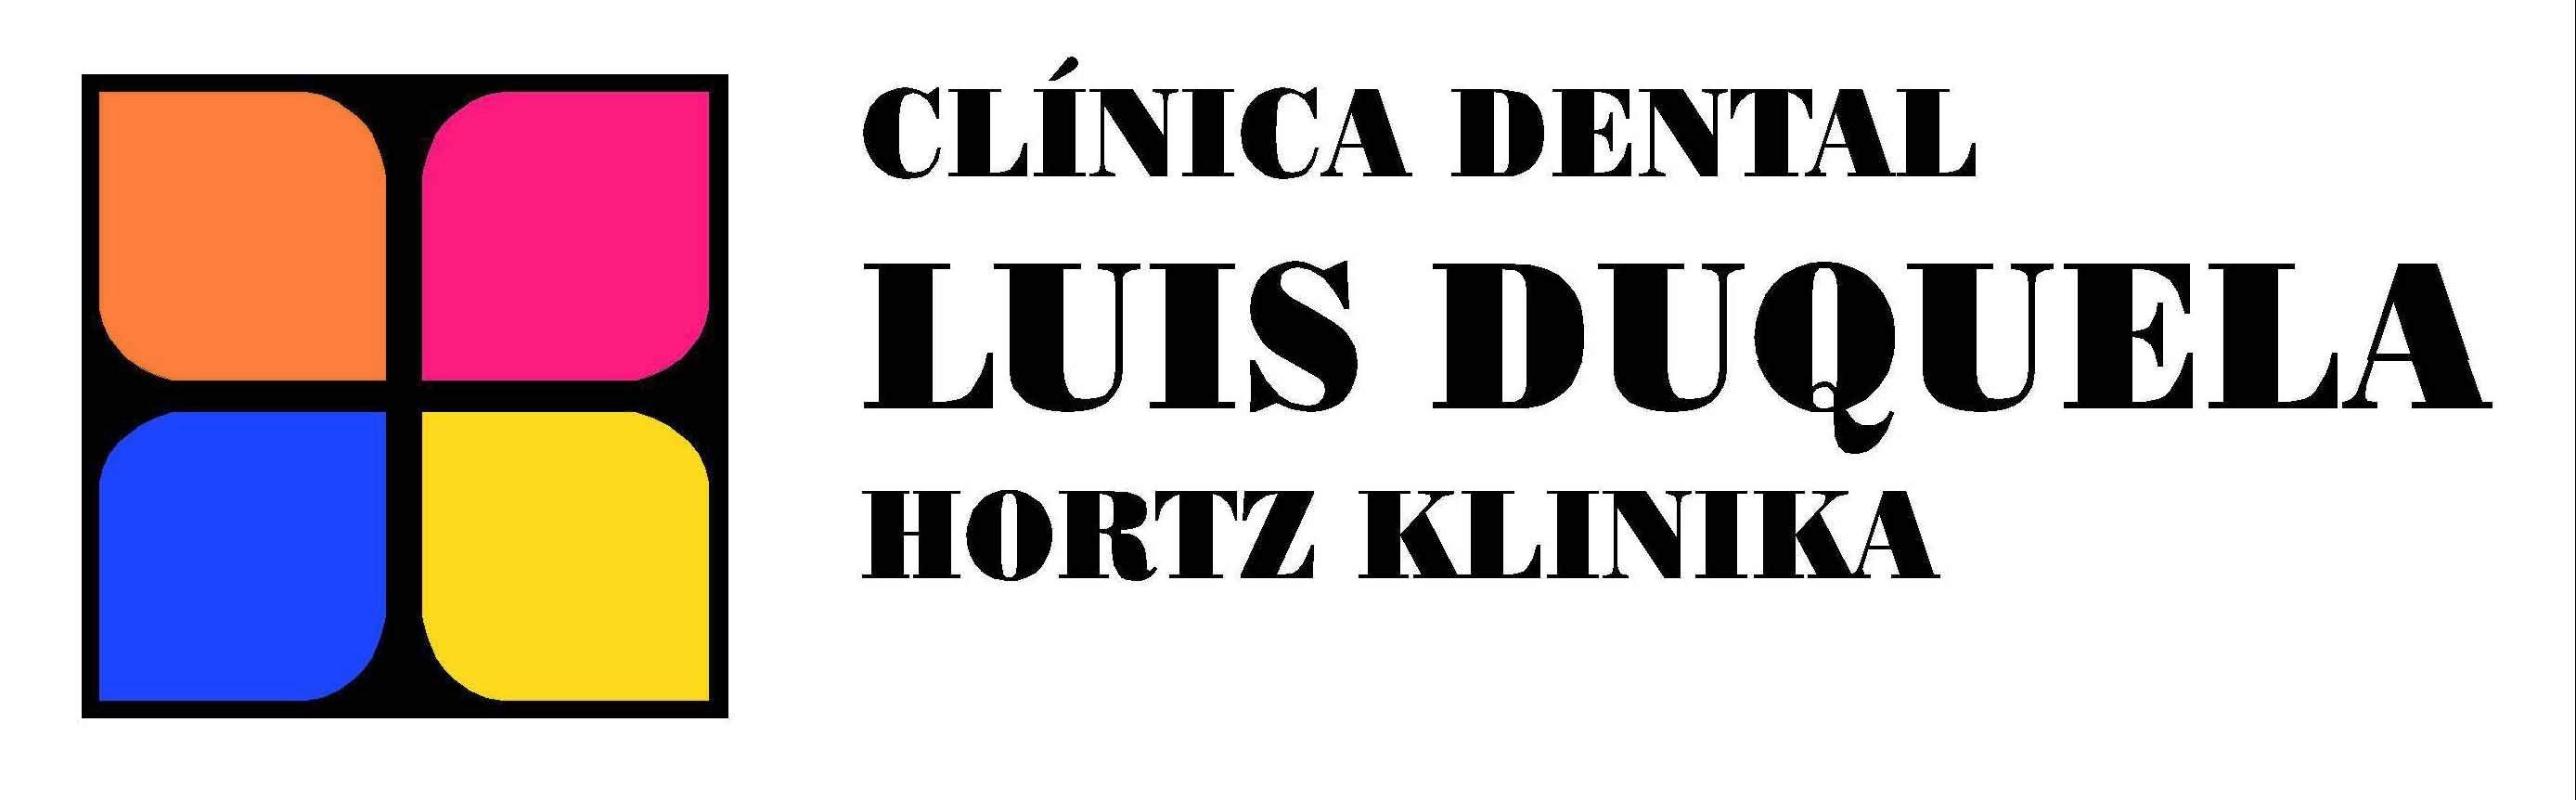 Logotipo de la clínica CLINICA DENTAL DR. LUIS DUQUELA